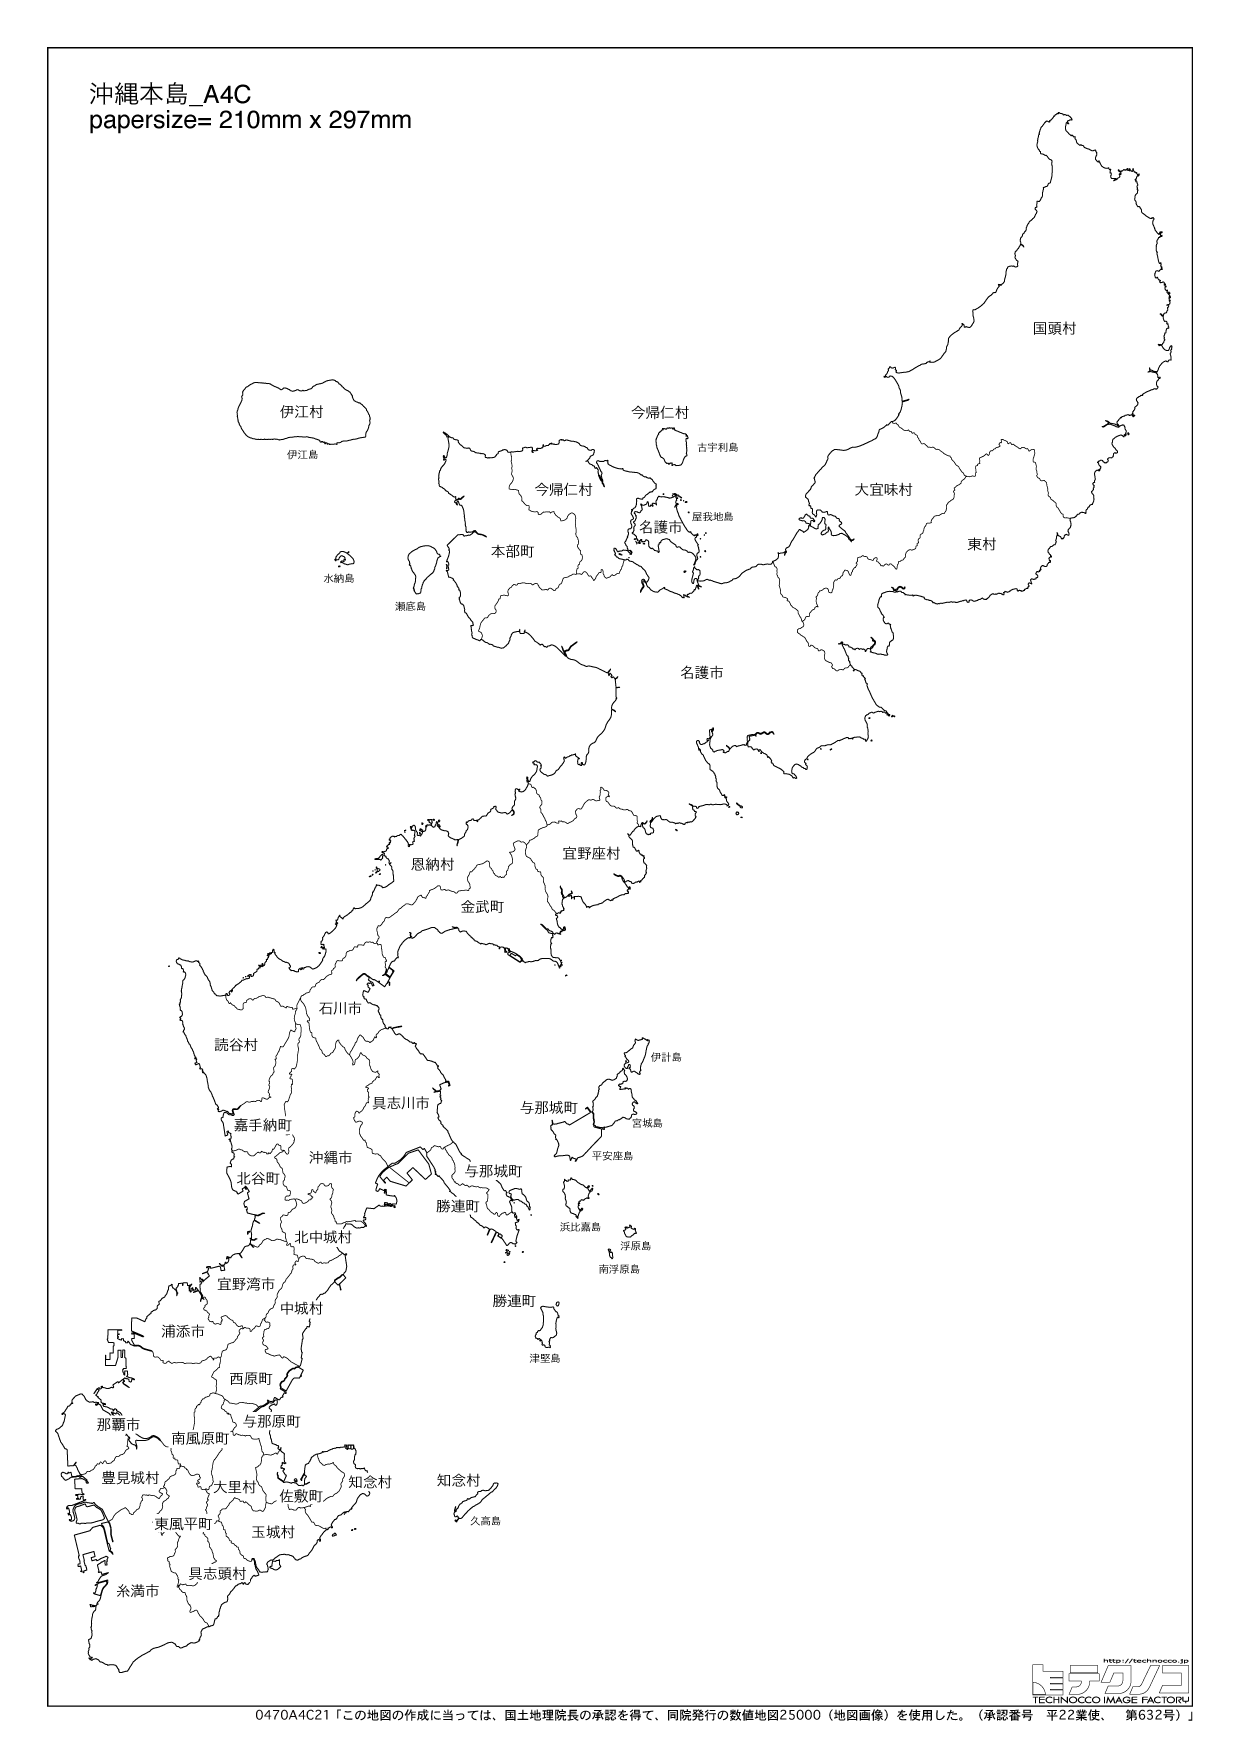 沖縄県の白地図と市町村の合併情報